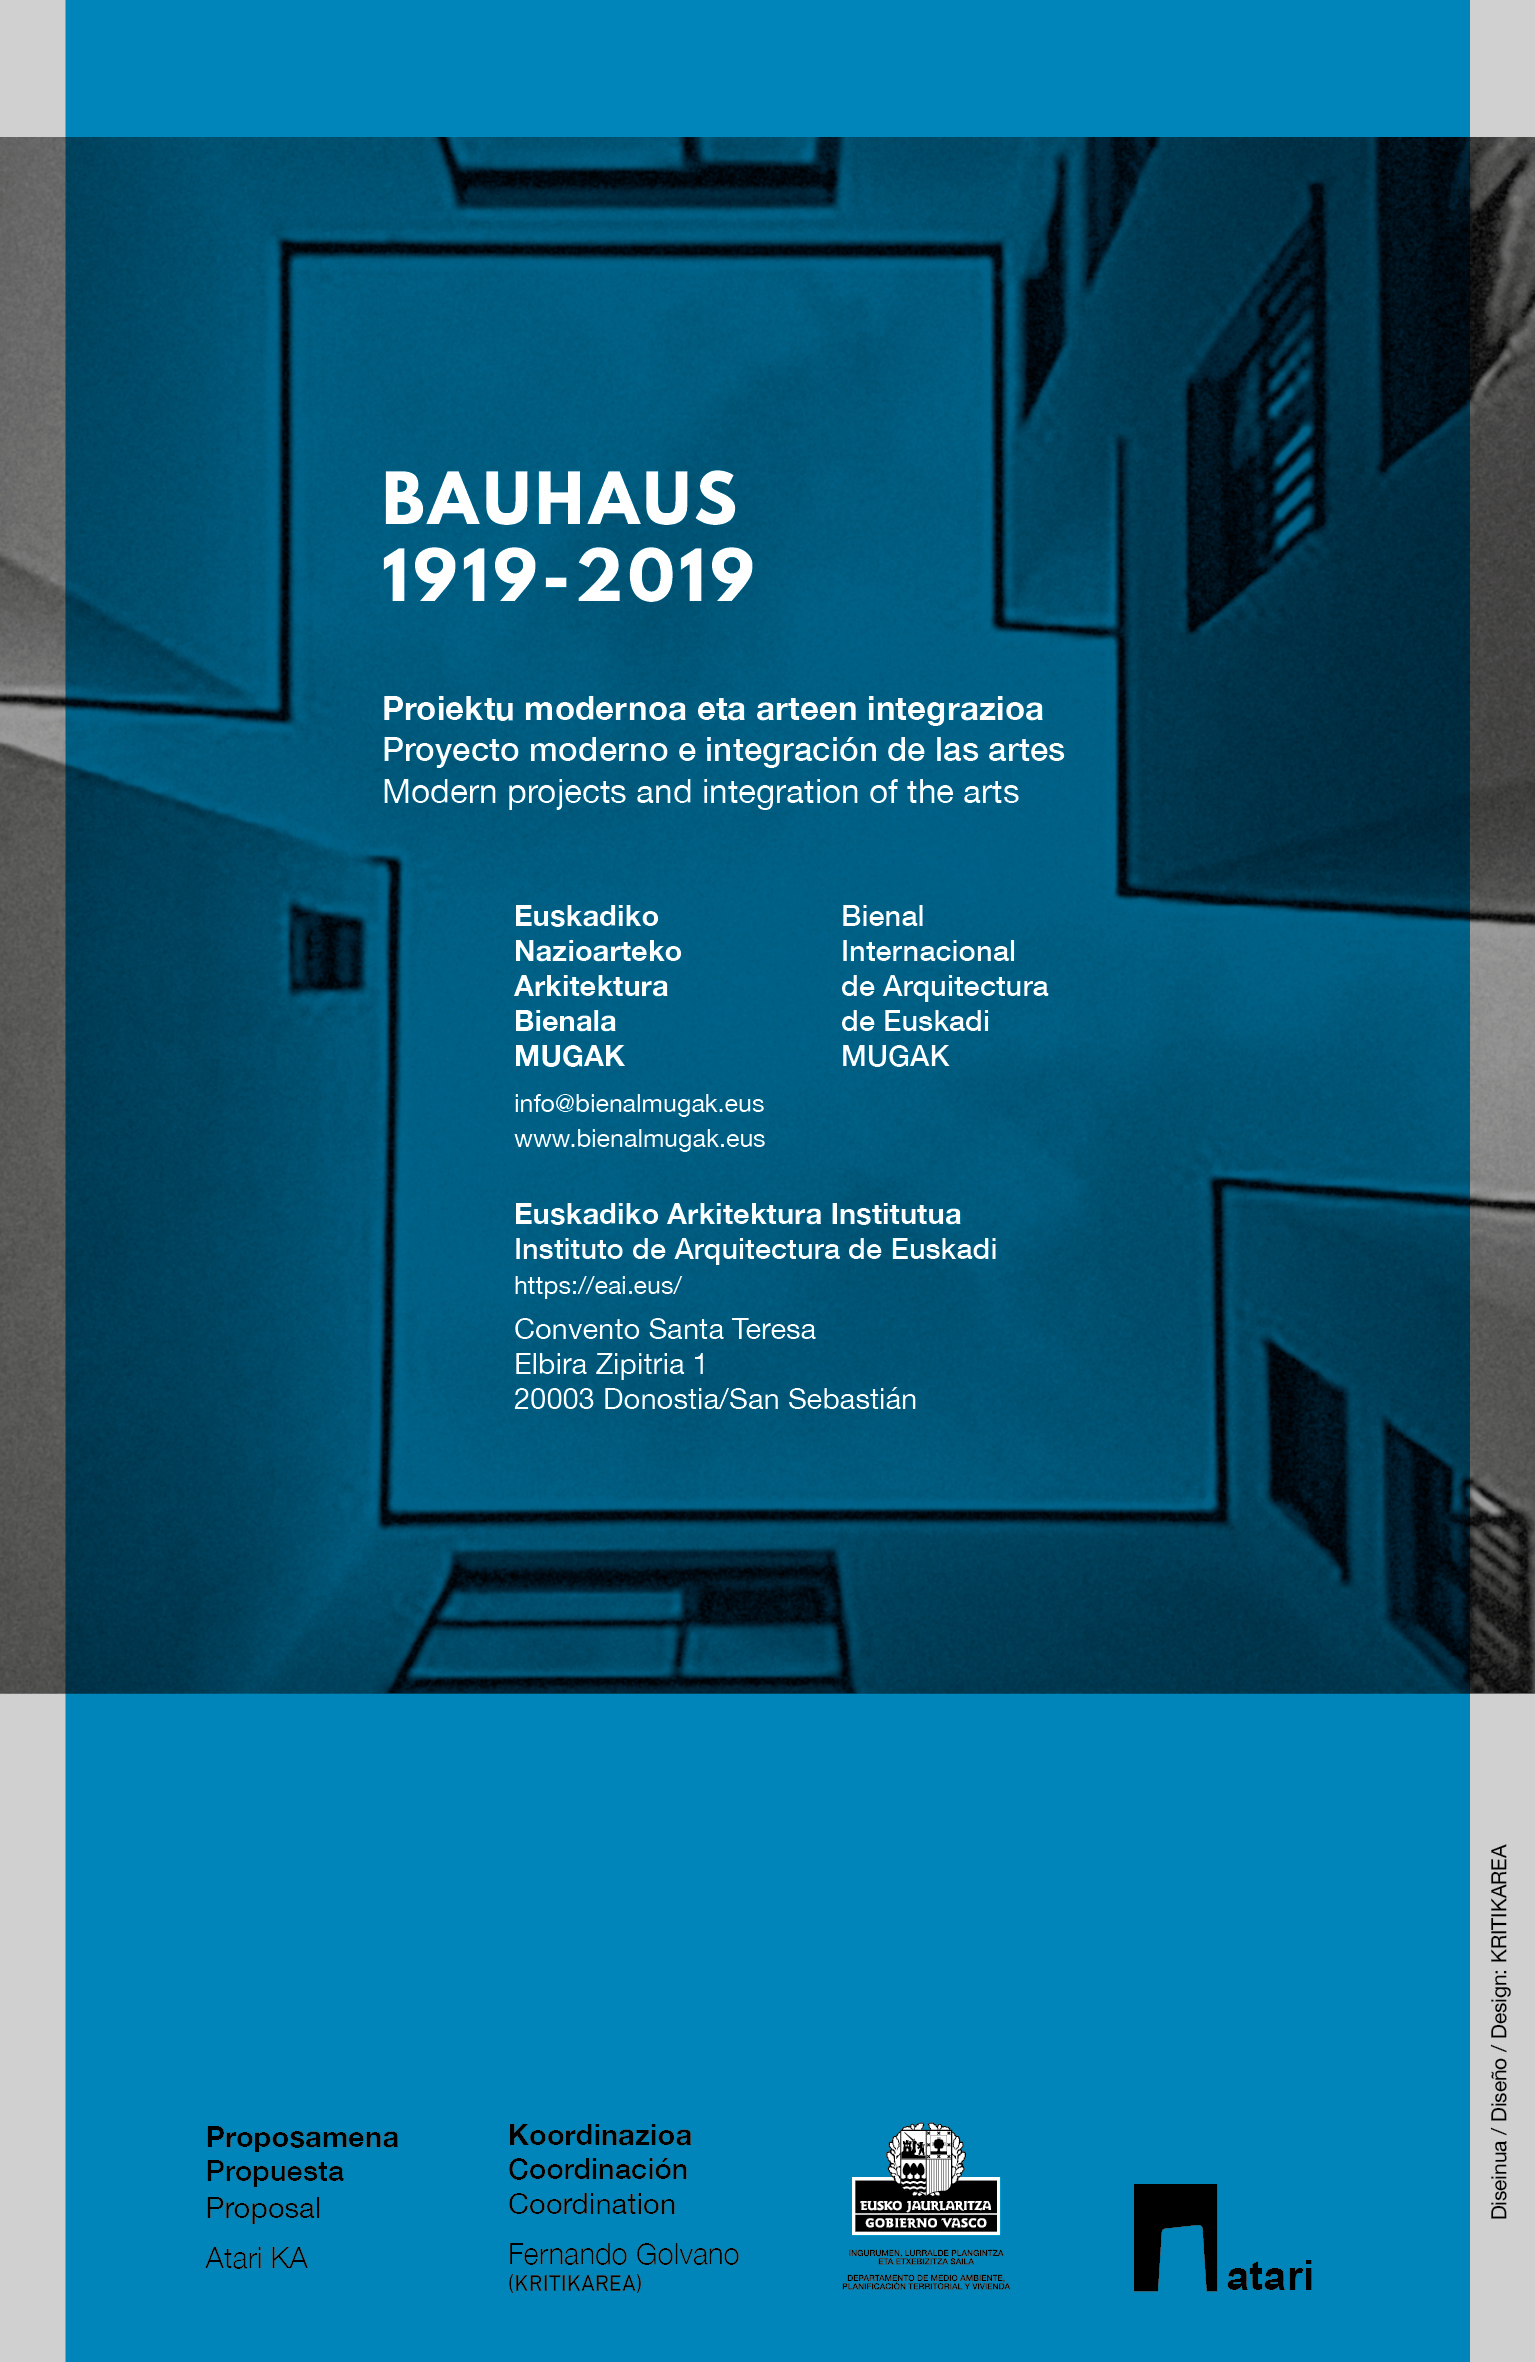 Bauhaus 1919-2019